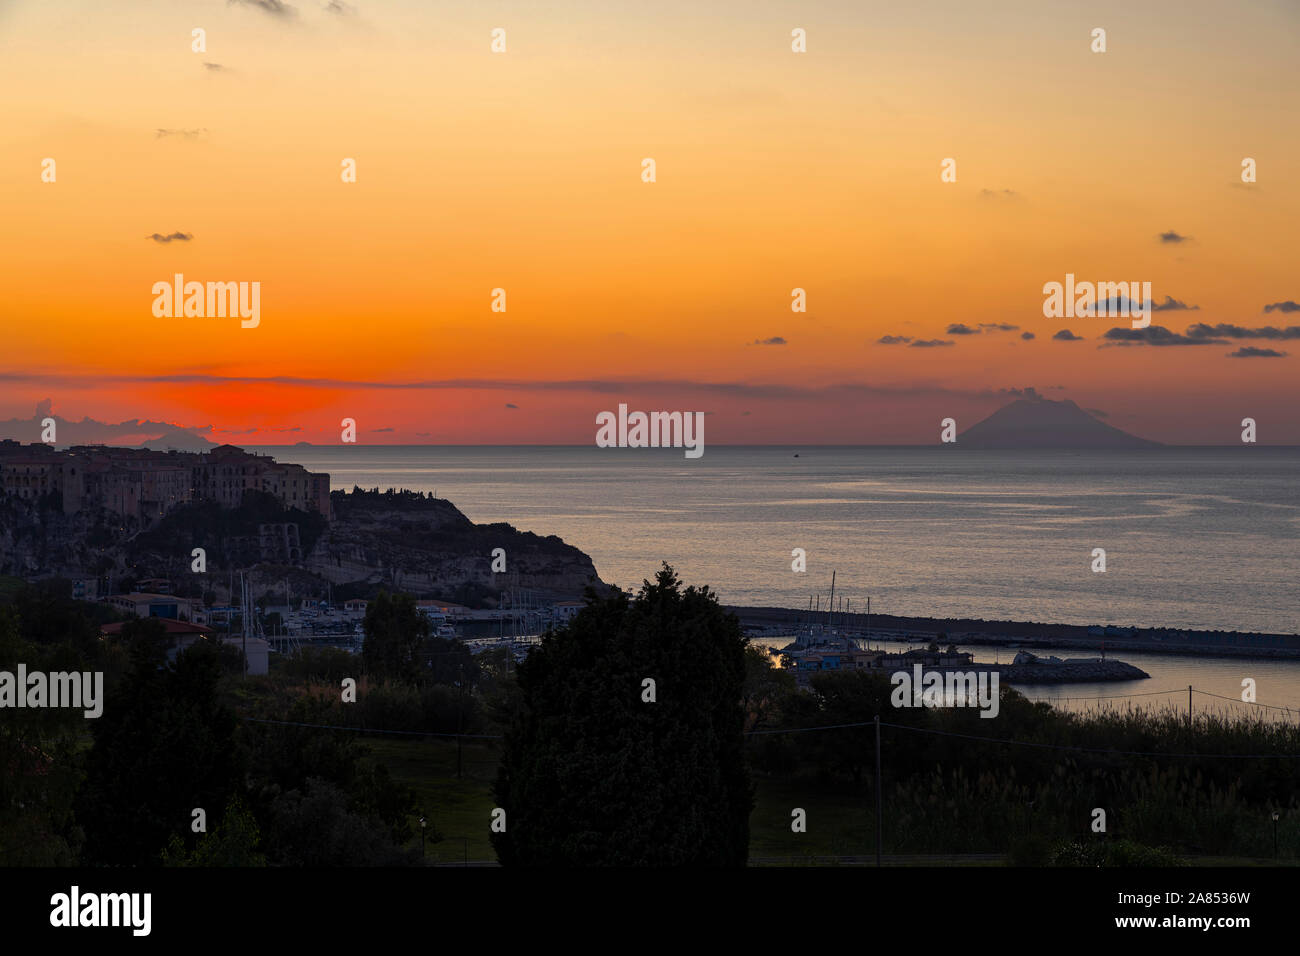 Fünfte in Folge von fünf Bilder von Sonnenuntergang über dem Meer in Tropea Italien Stockfoto